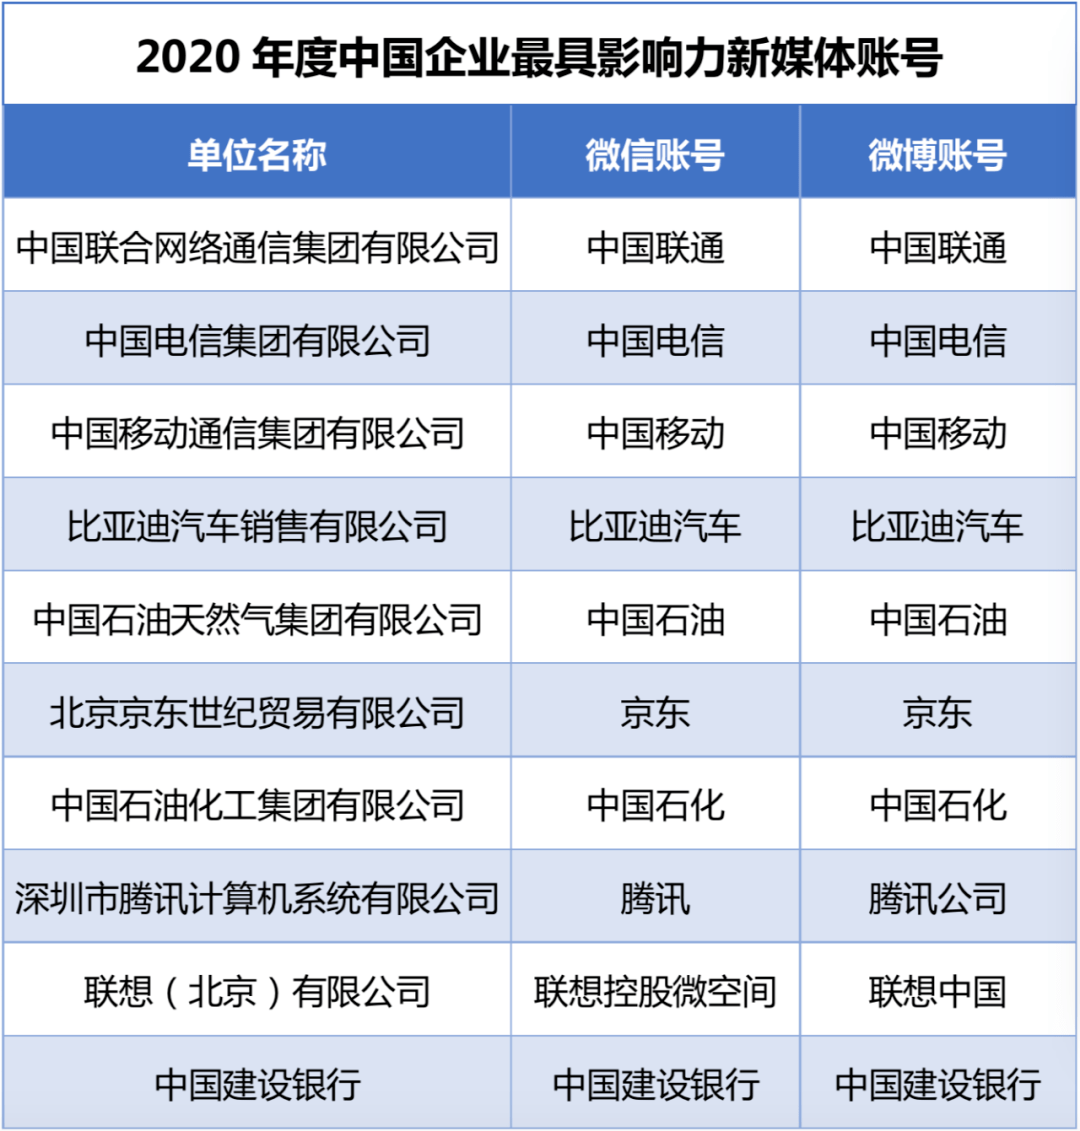 中国联通连续多年拿到第一名 三家通信运营商占据前三名多年